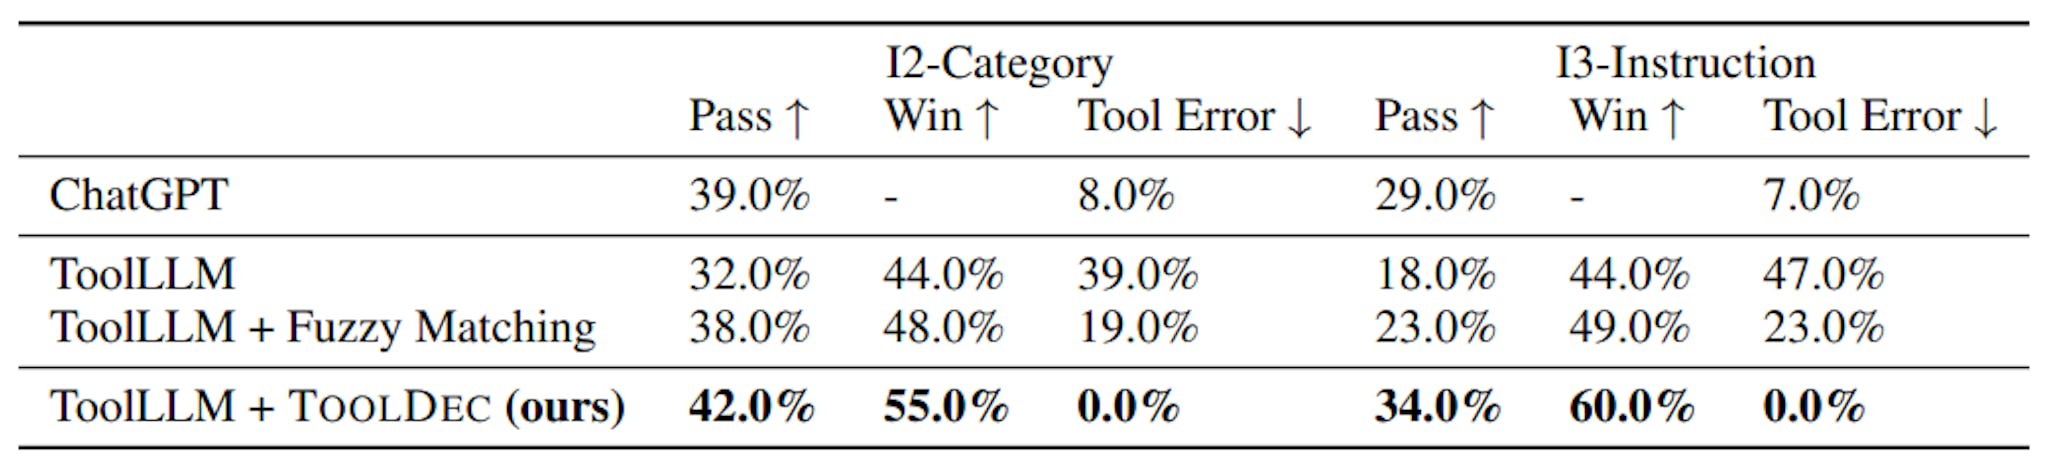 Tableau 3 : Résultats sur ToolEval. ToolLLM amélioré par TOOLDEC a surpassé les références ToolLLM dans toutes les mesures. TOOLDEC a éliminé toutes les erreurs des outils et a même réussi à battre légèrement ChatGPT.